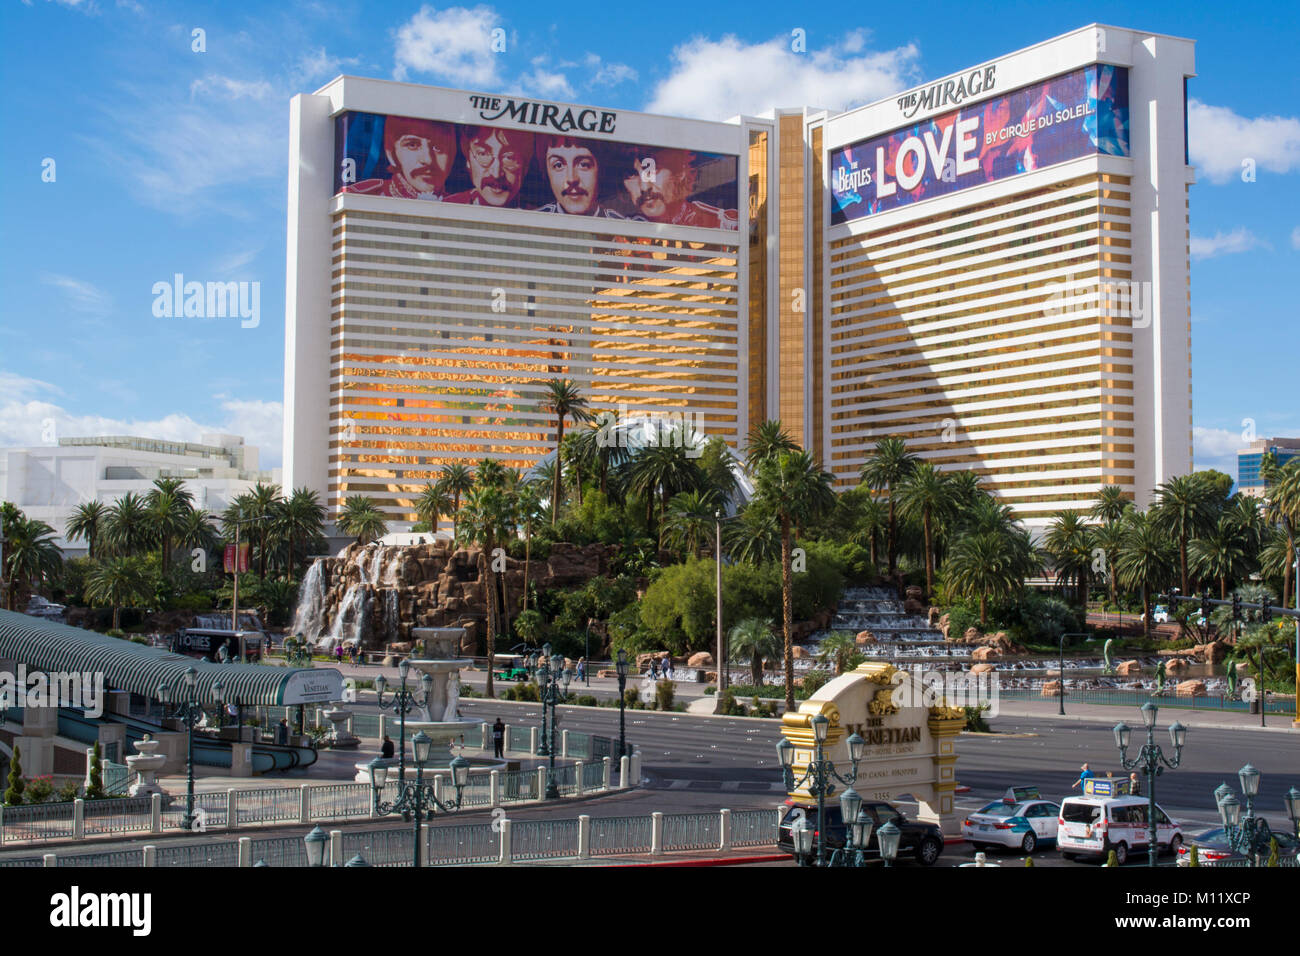 Mirage Hotel and Casino, S. Las Vegas Blvd, Las Vegas, Nevada, USA. Stock Photo